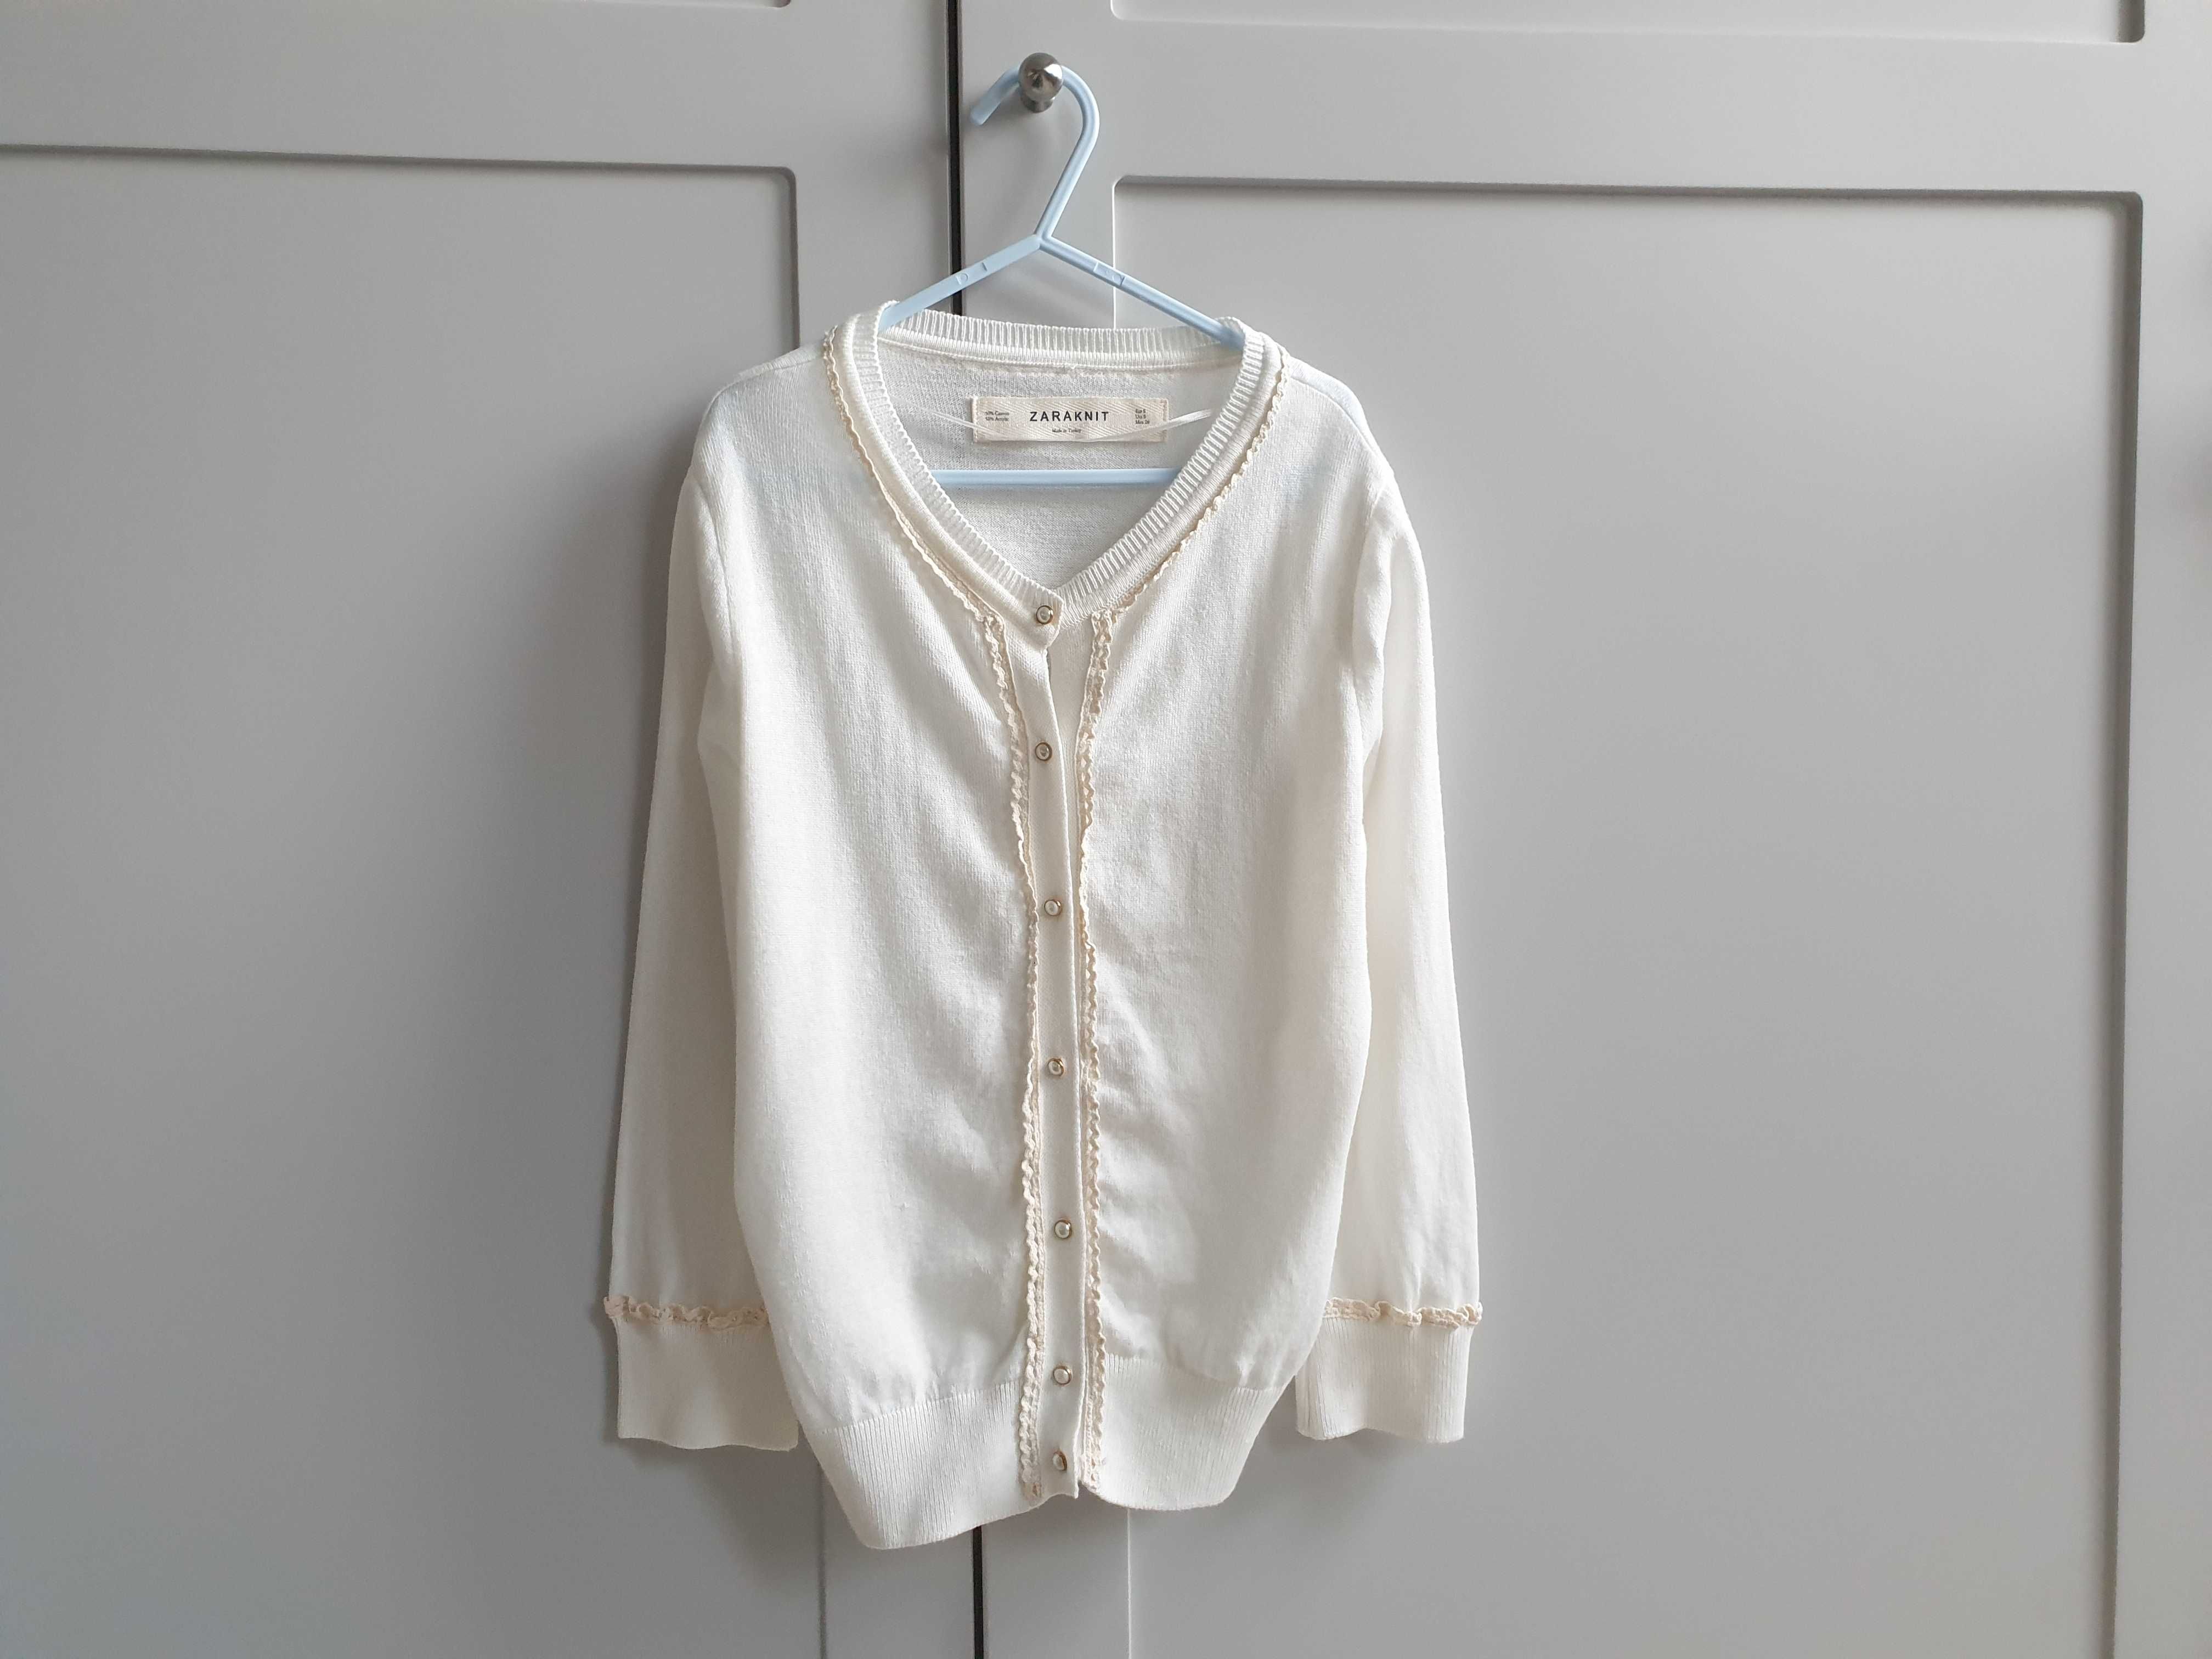 Biały kremowy sweter zapinany Zara 158 164